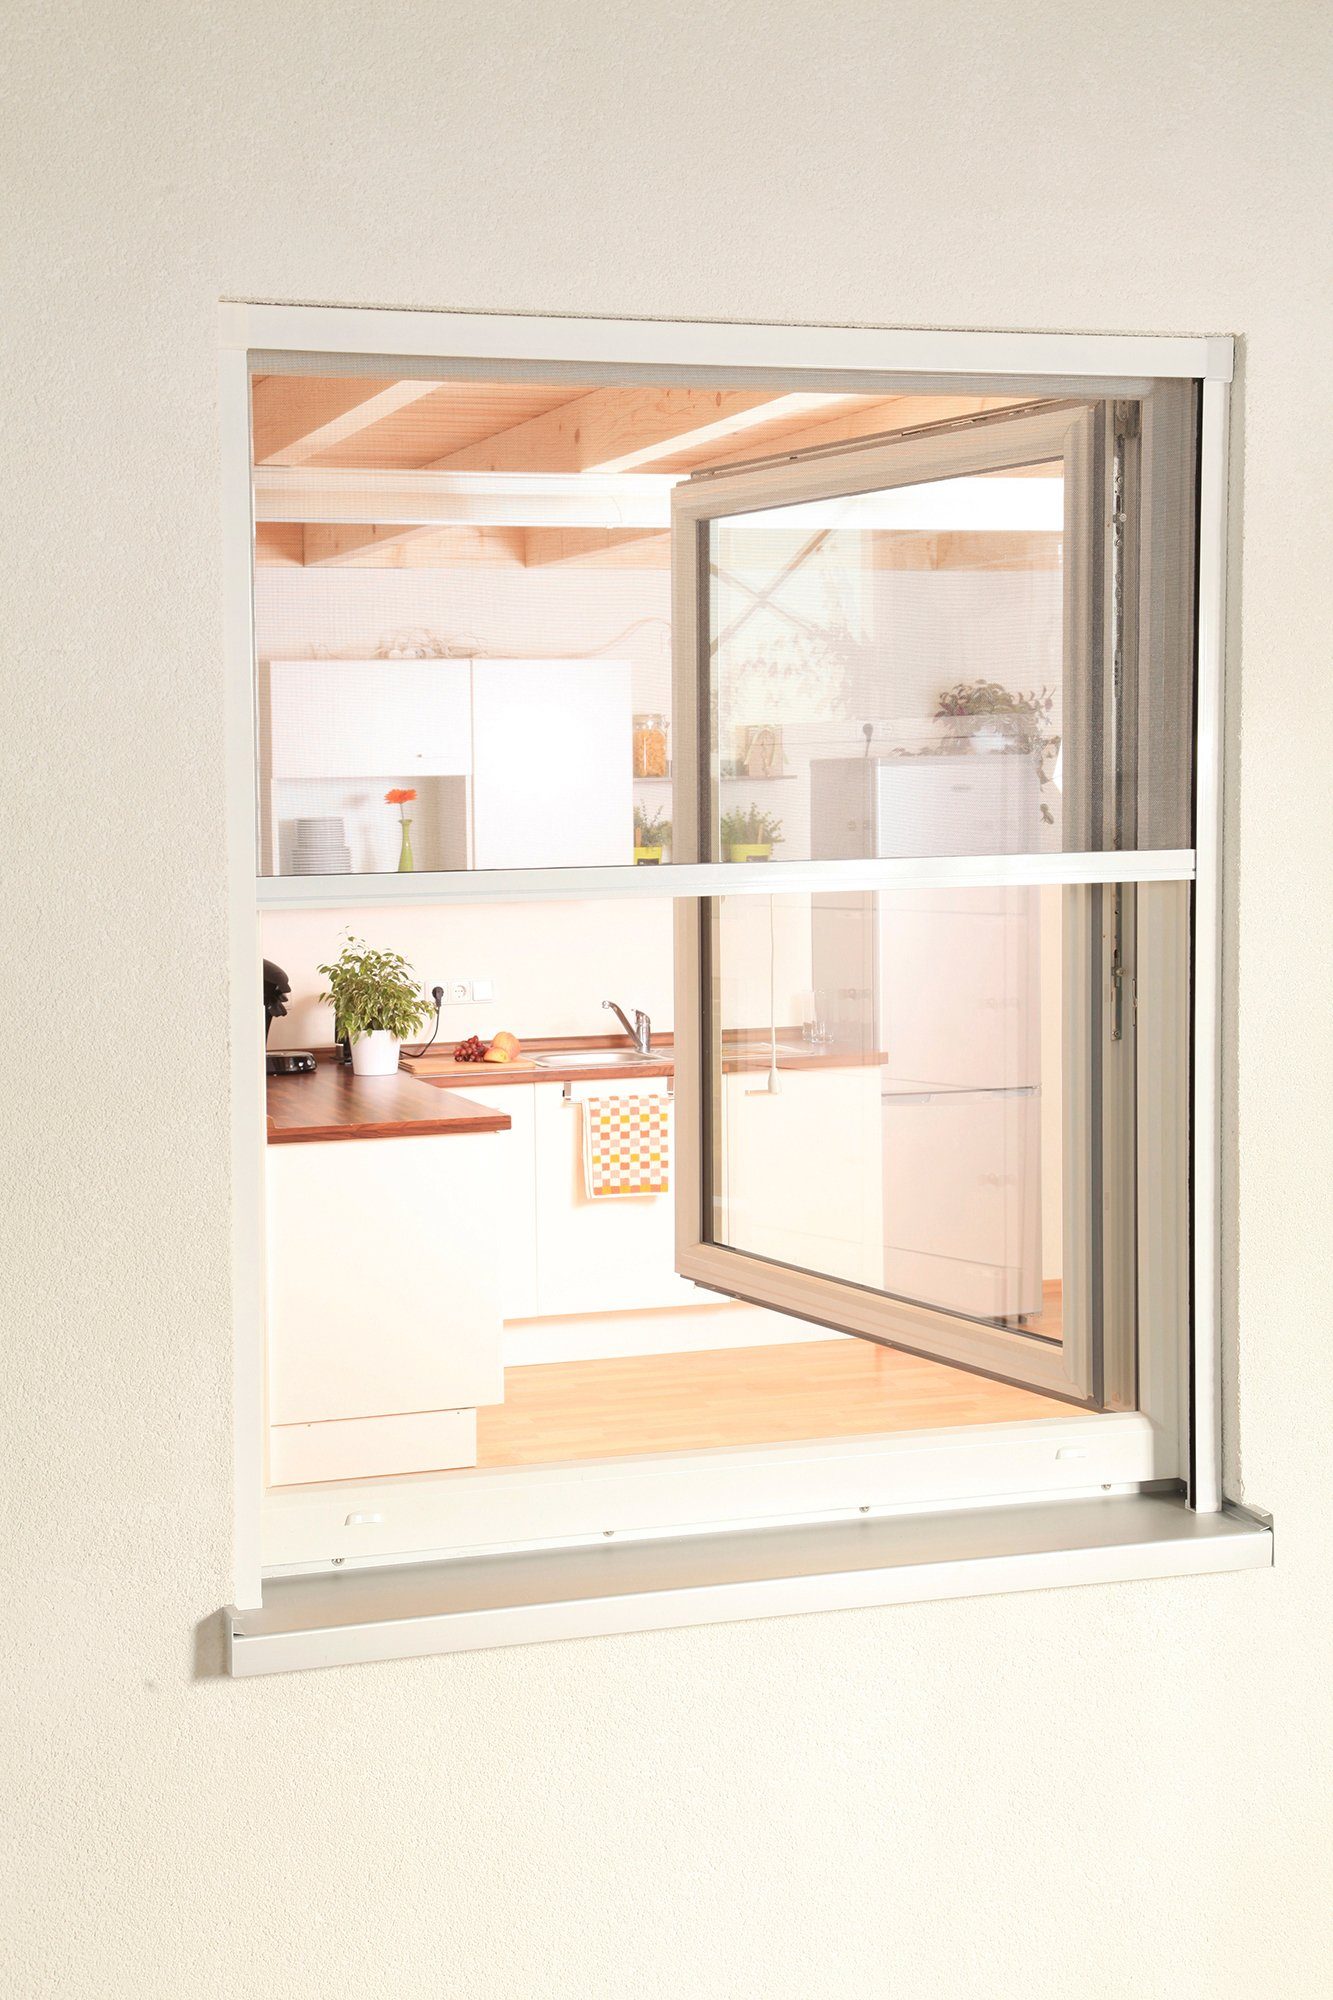 Insektenschutzrollo Fenster, international, 130x160 weiß/anthrazit, für transparent, SMART, cm verschraubt, BxH: hecht